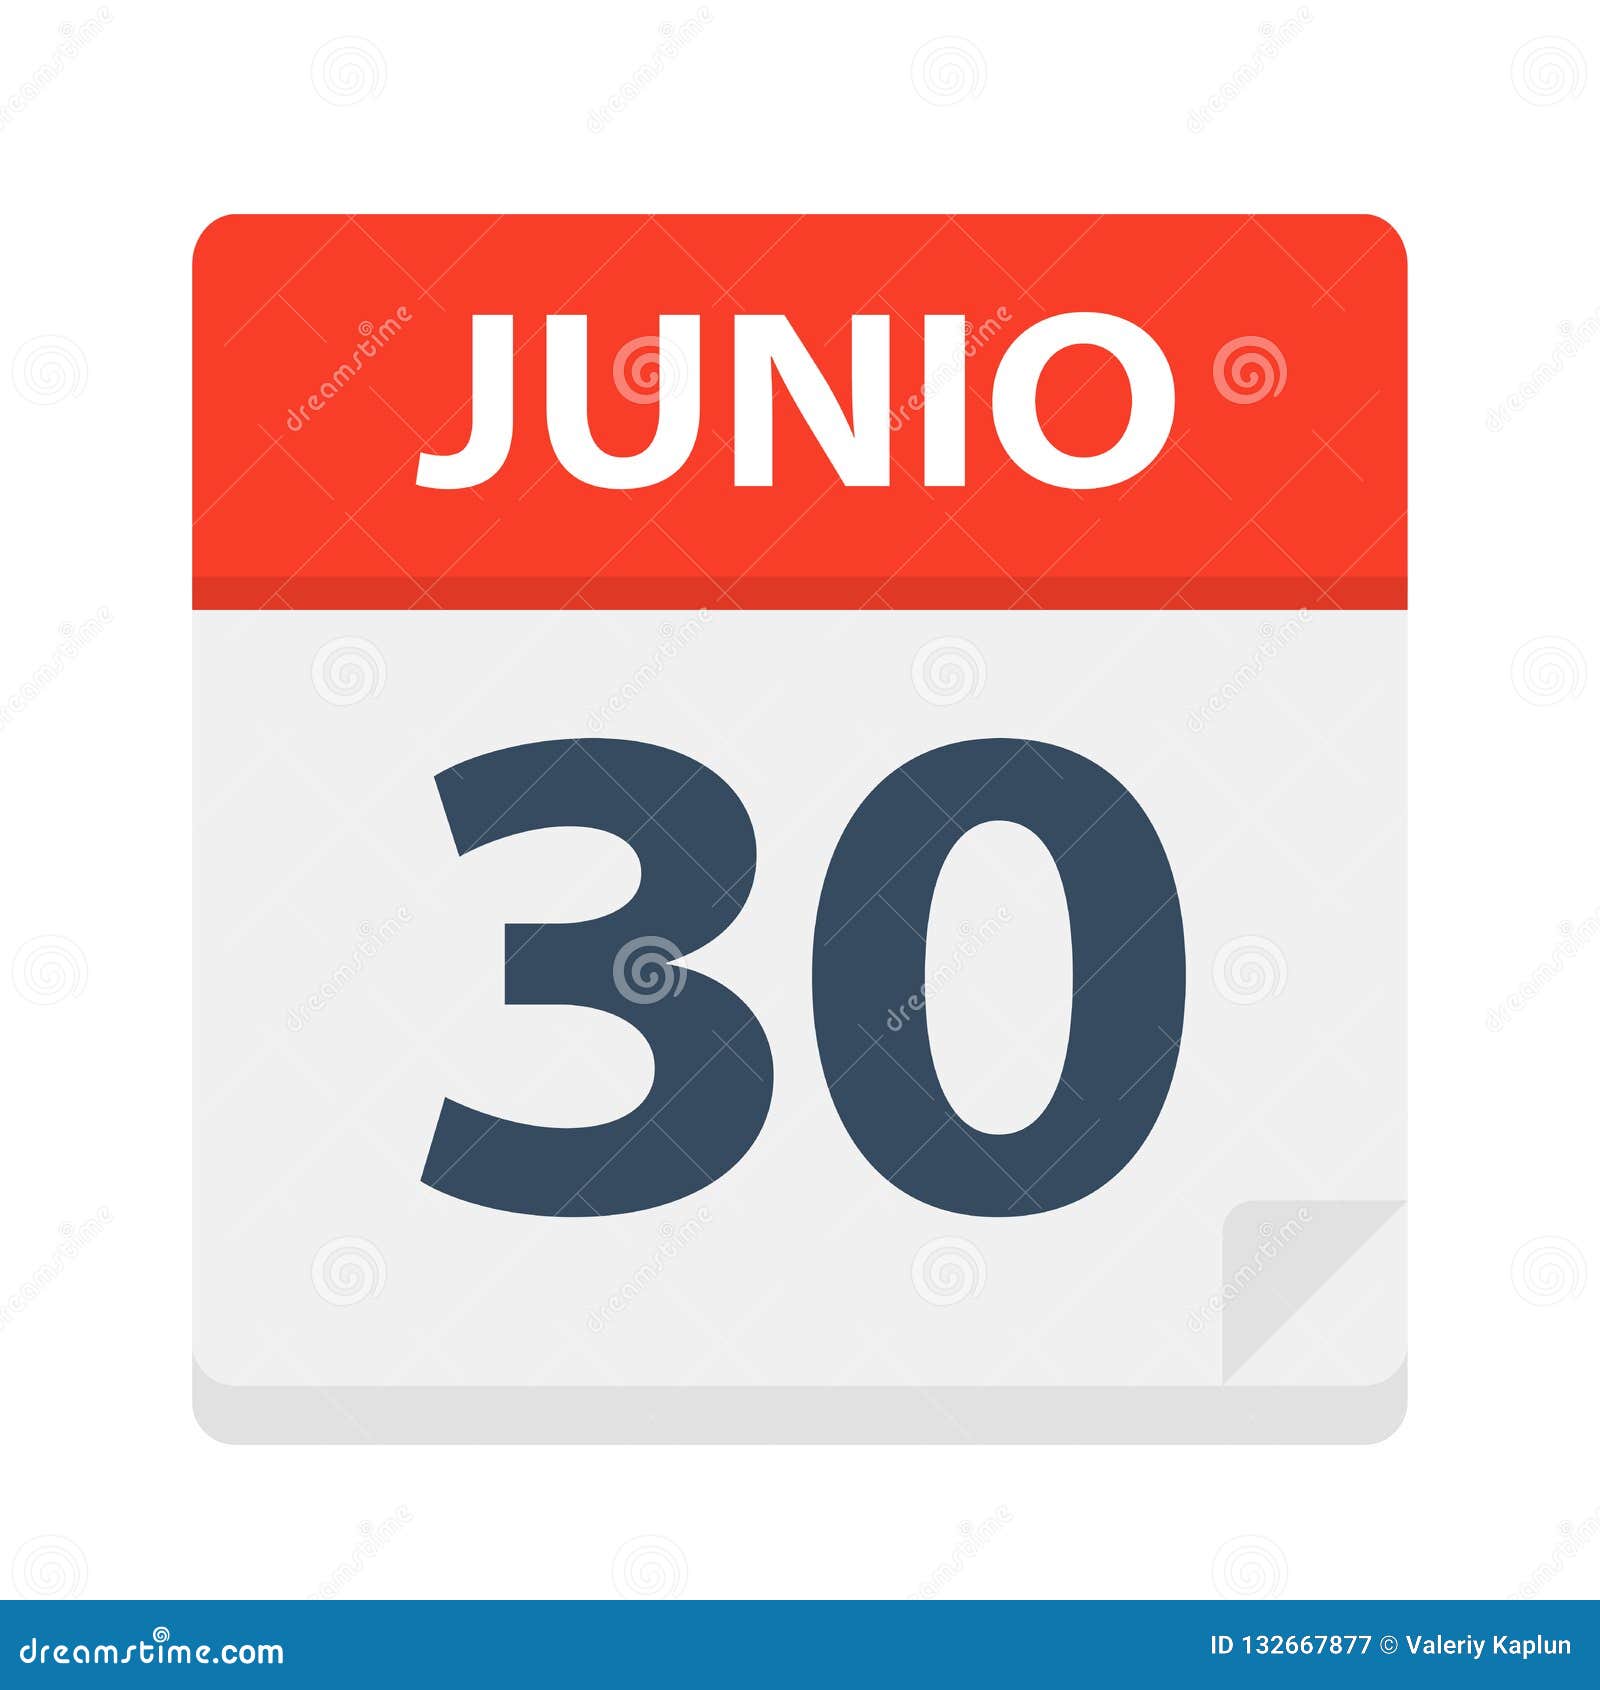 junio 30 - calendar icon - june 30.   of spanish calendar leaf